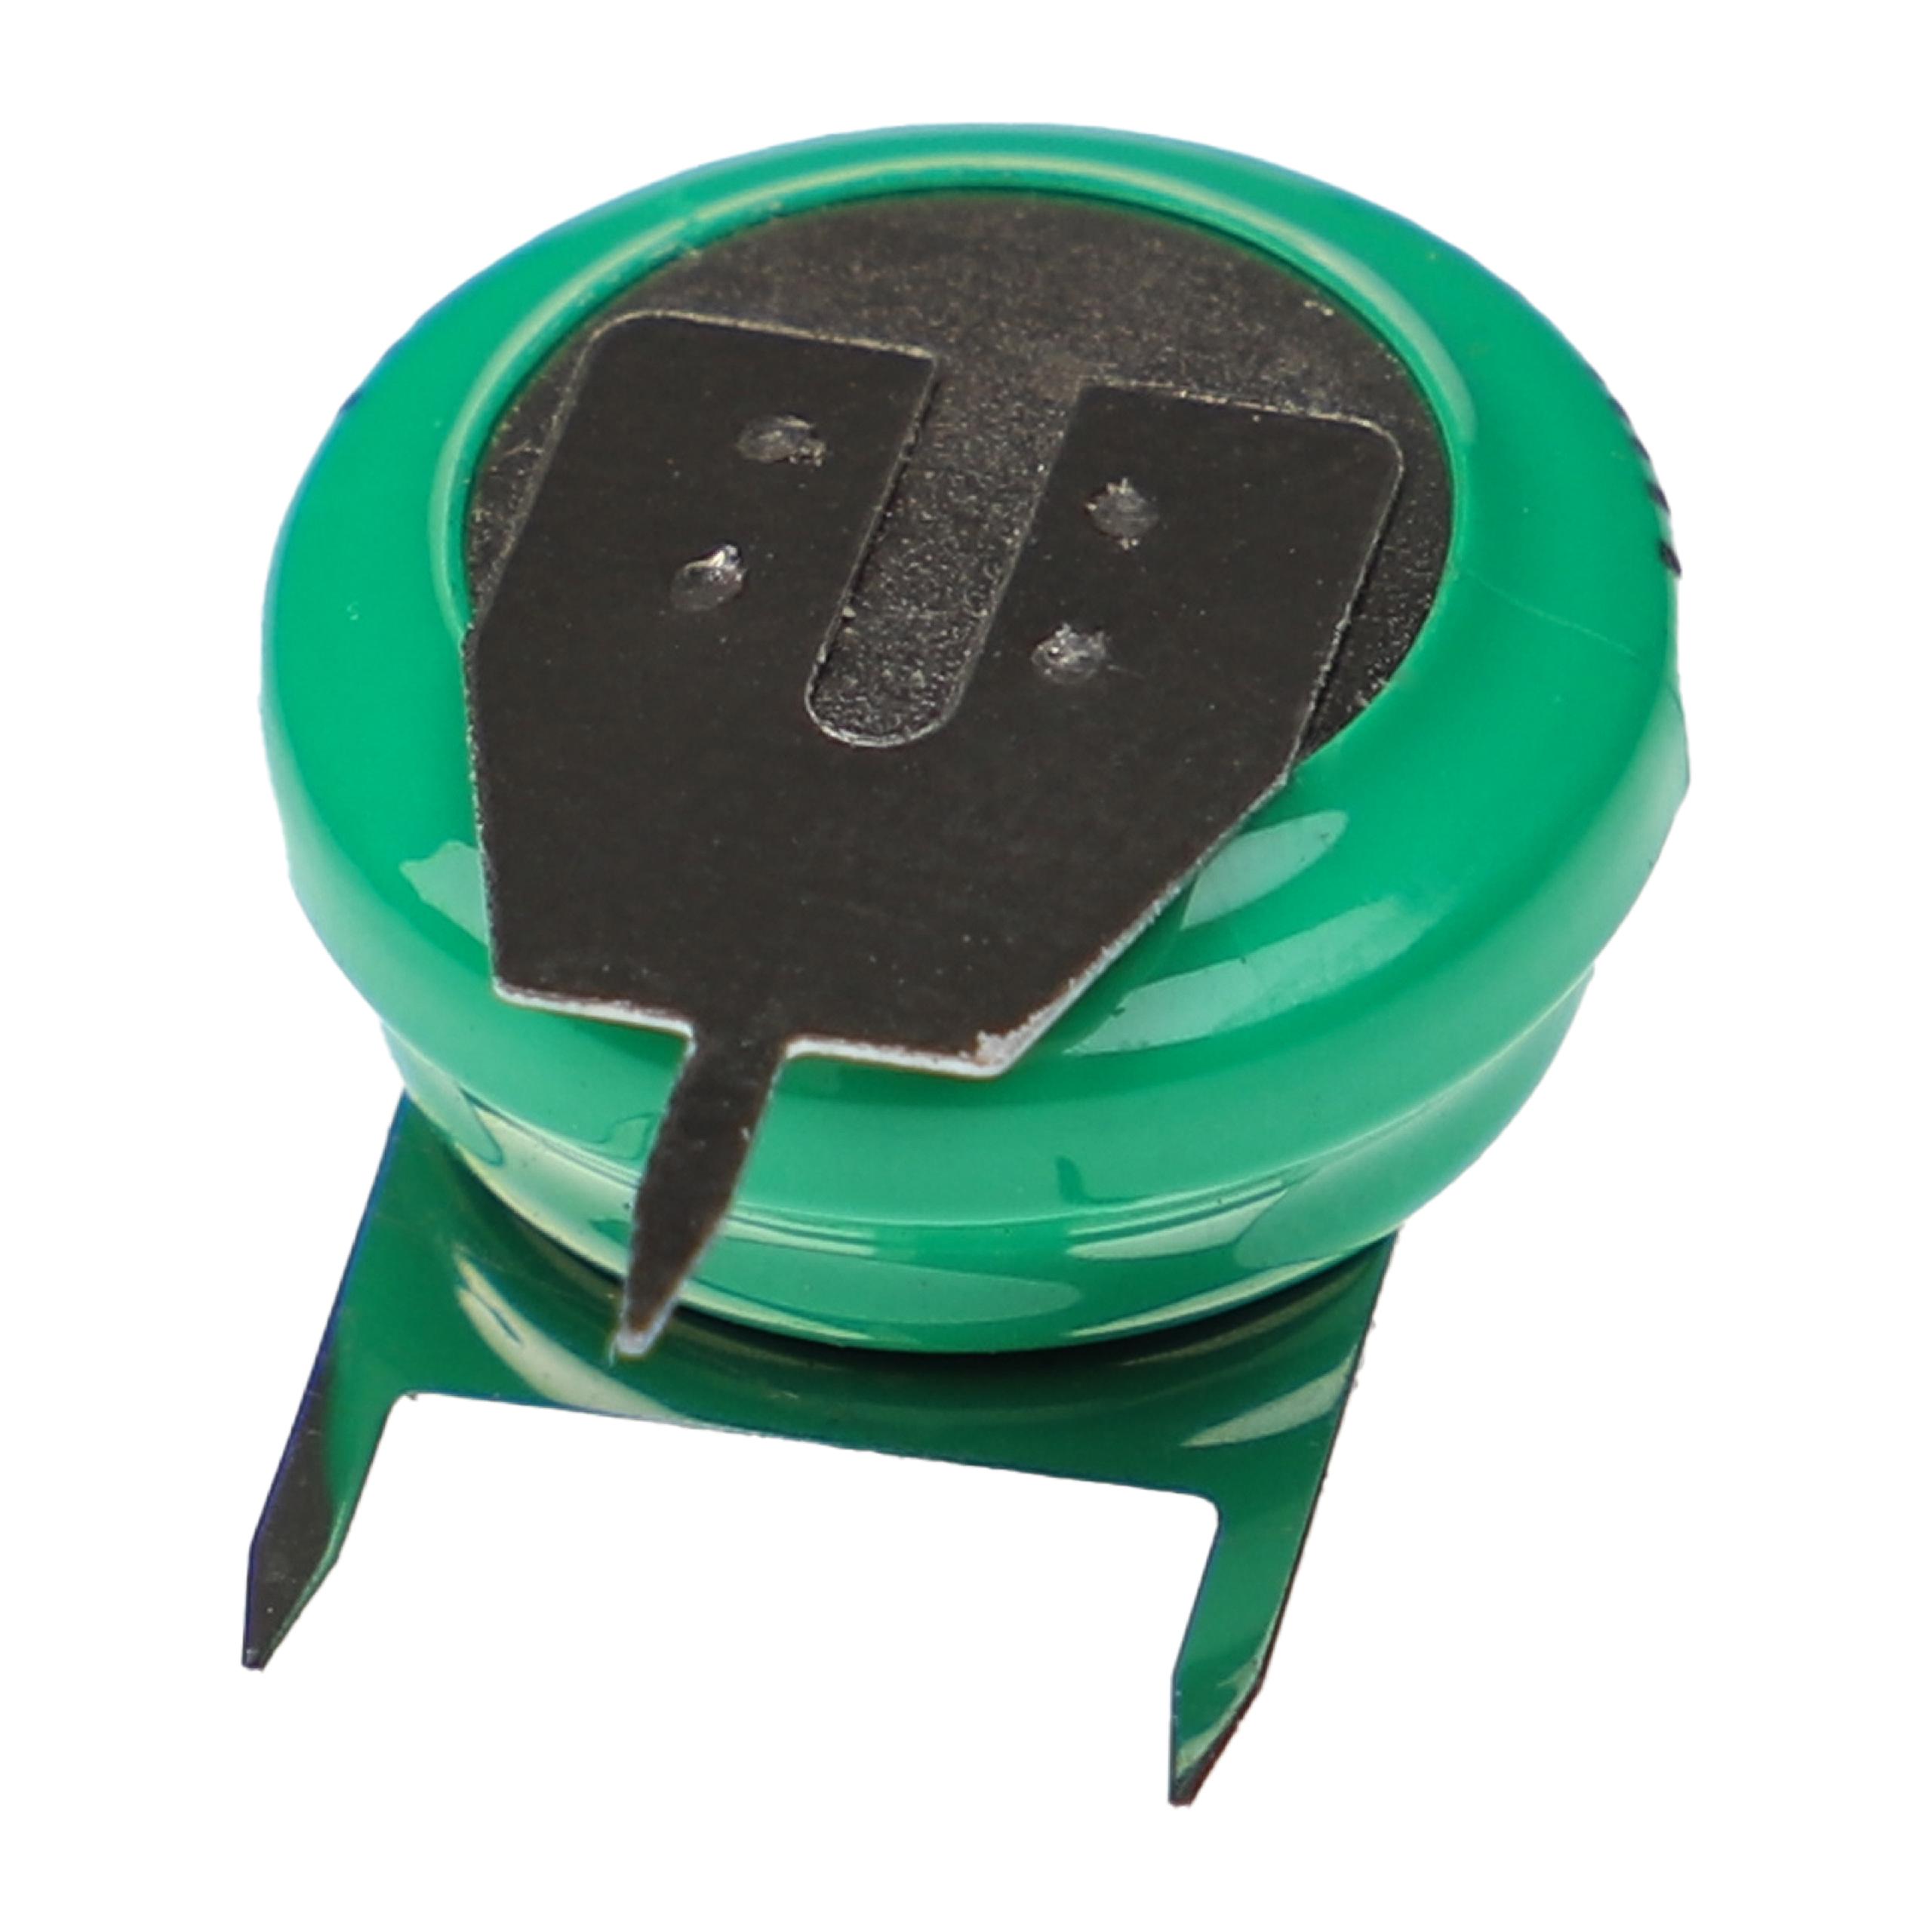 Batteria a bottone (1x cella) tipo V80H 3 pin sostituisce V80H per modellismo, luci solari ecc. 